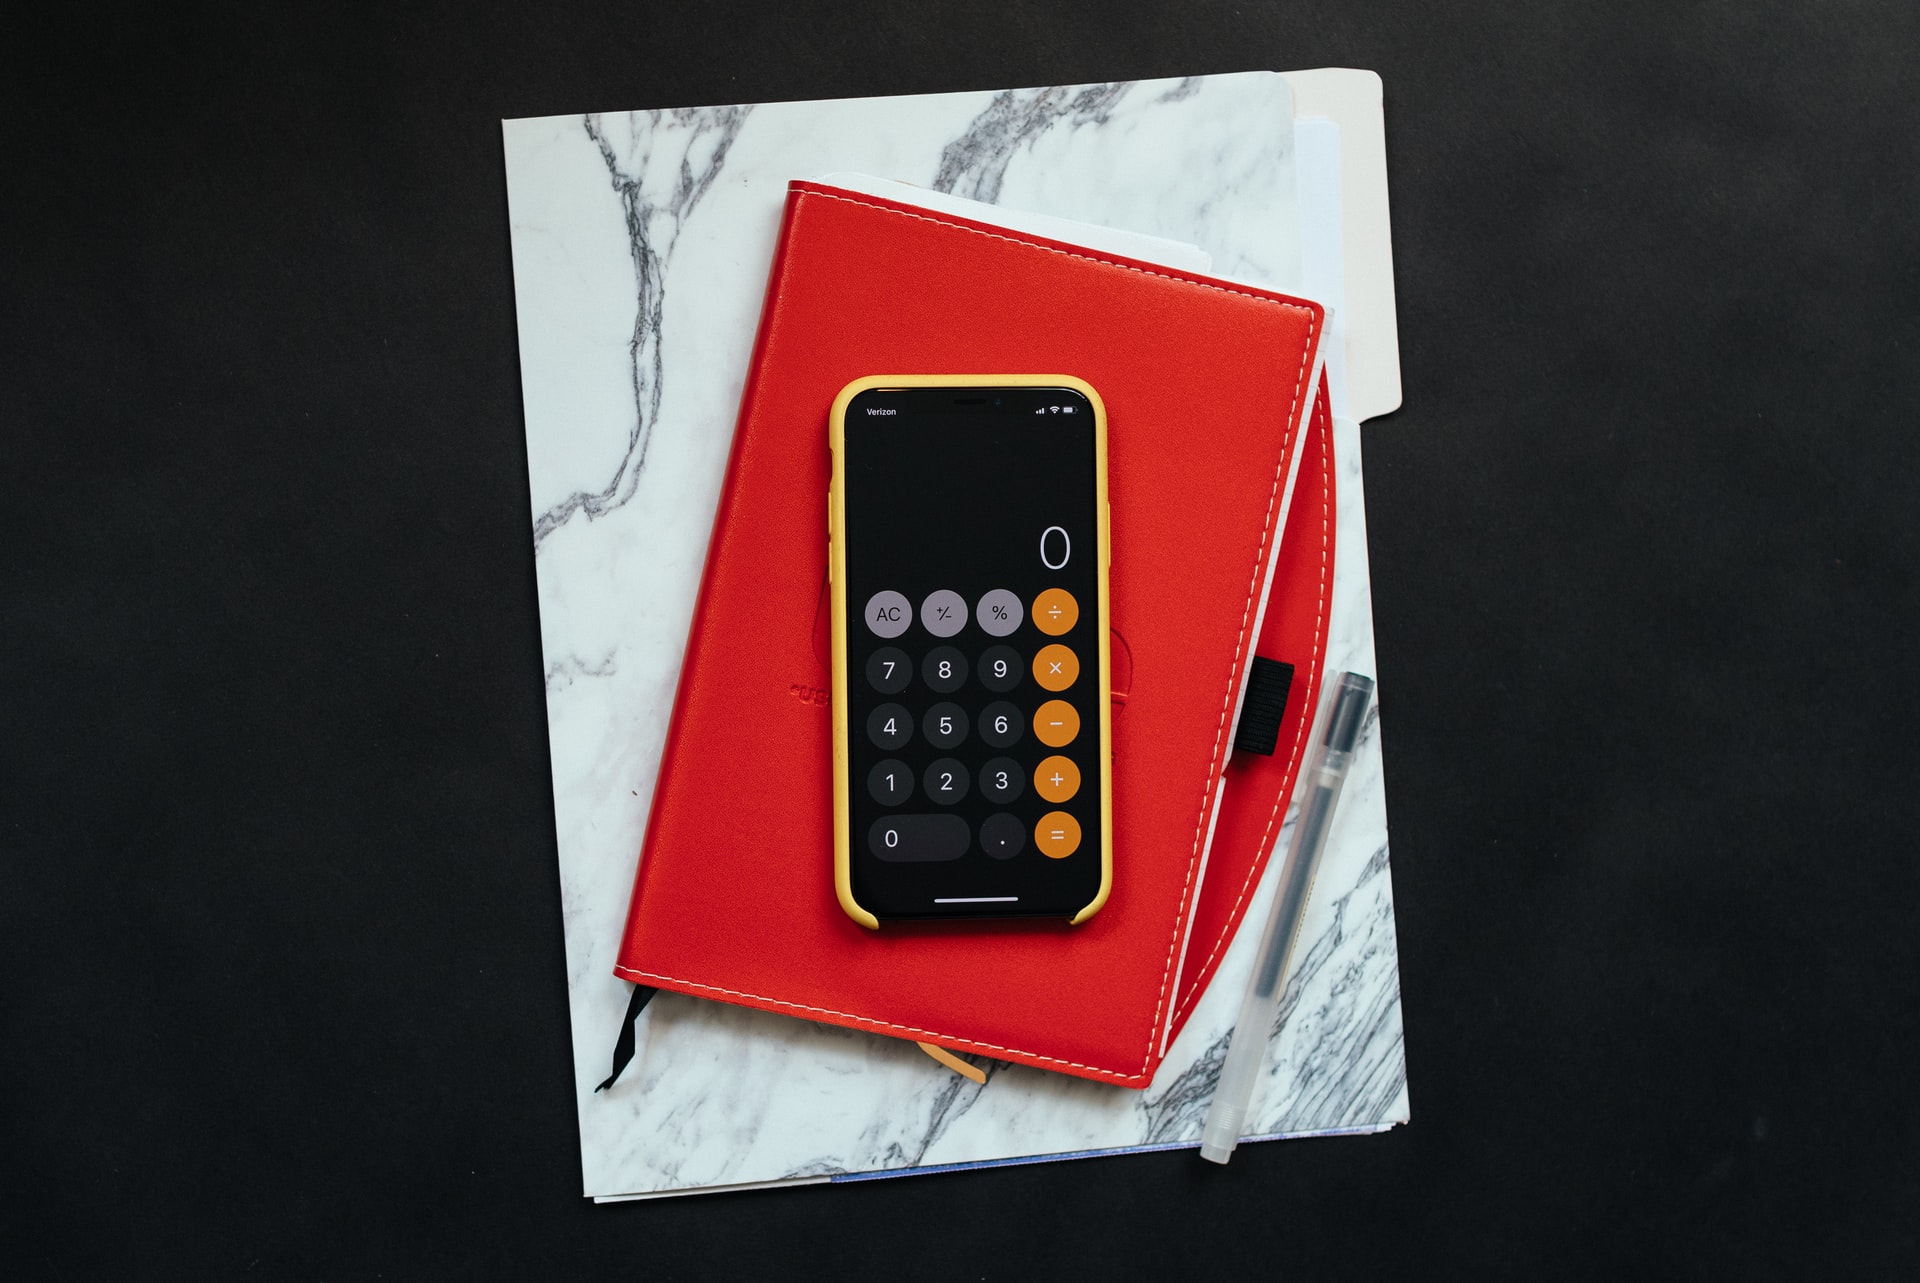 a calculator in a red case